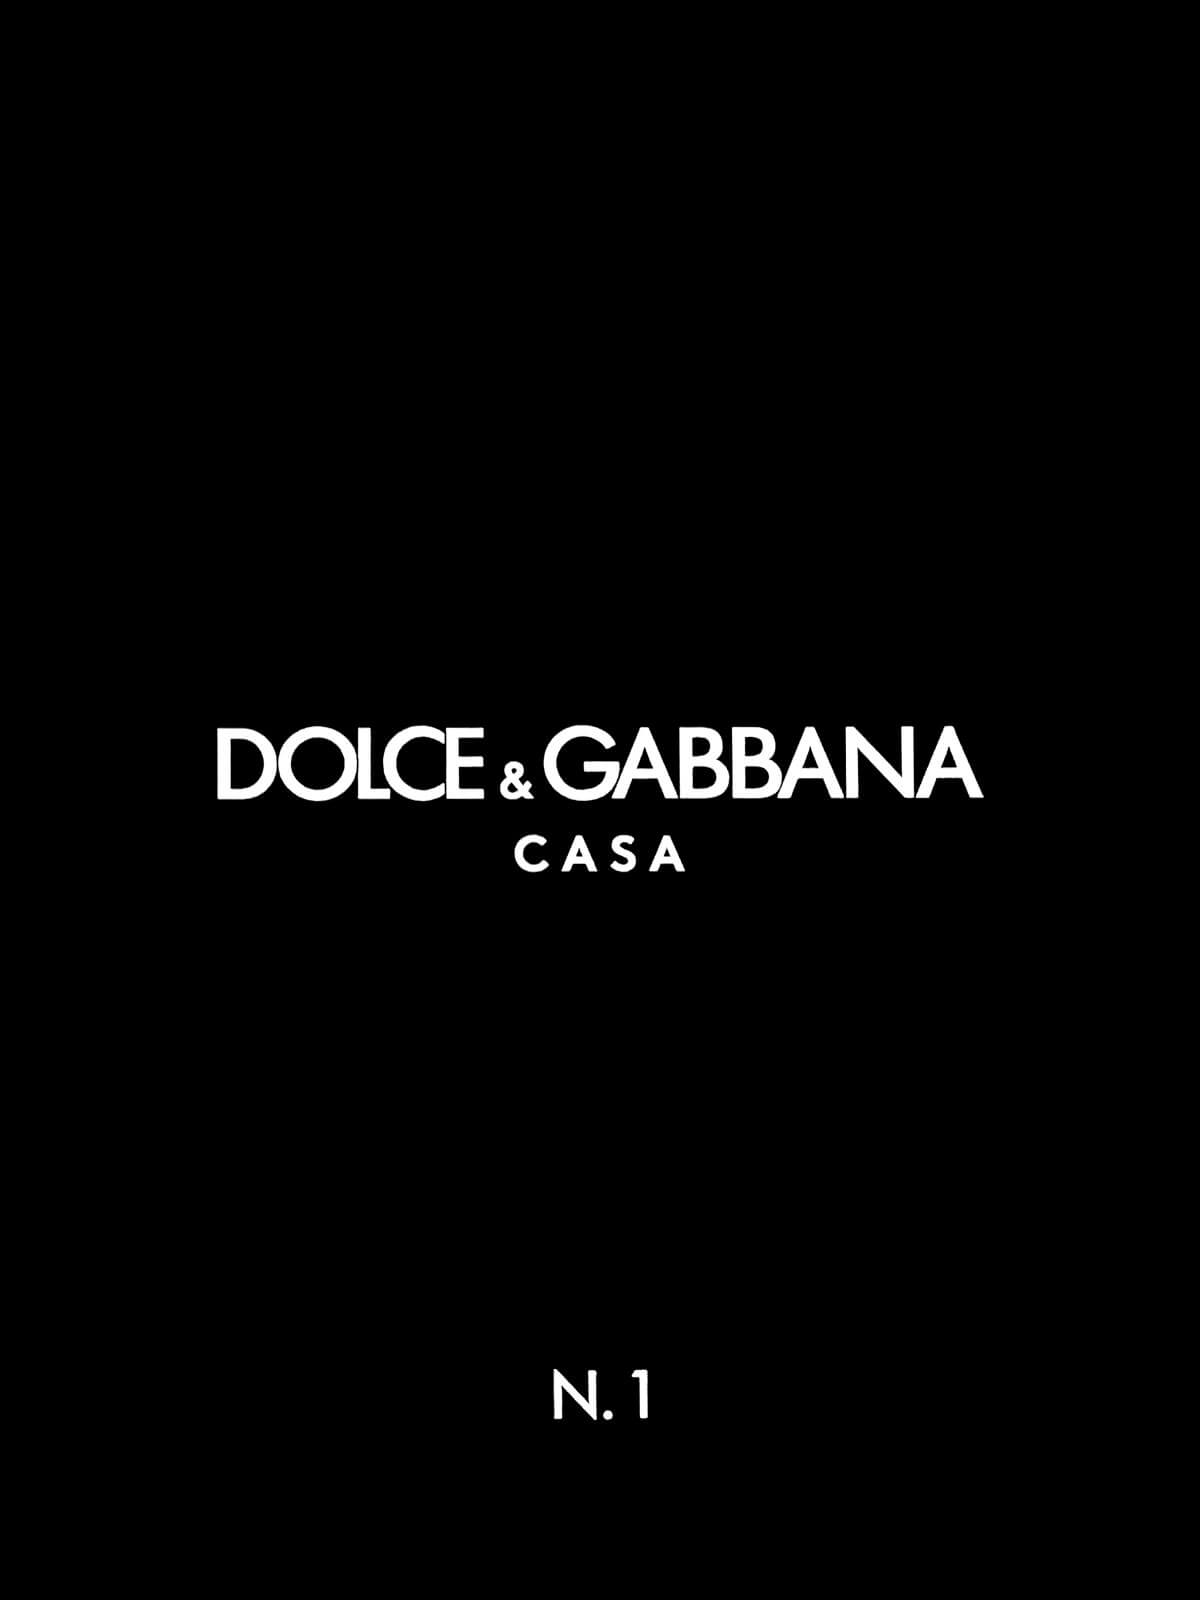 Seabrook Dolce & Gabbana Geo Carretto Wallpaper Mural - Carretto